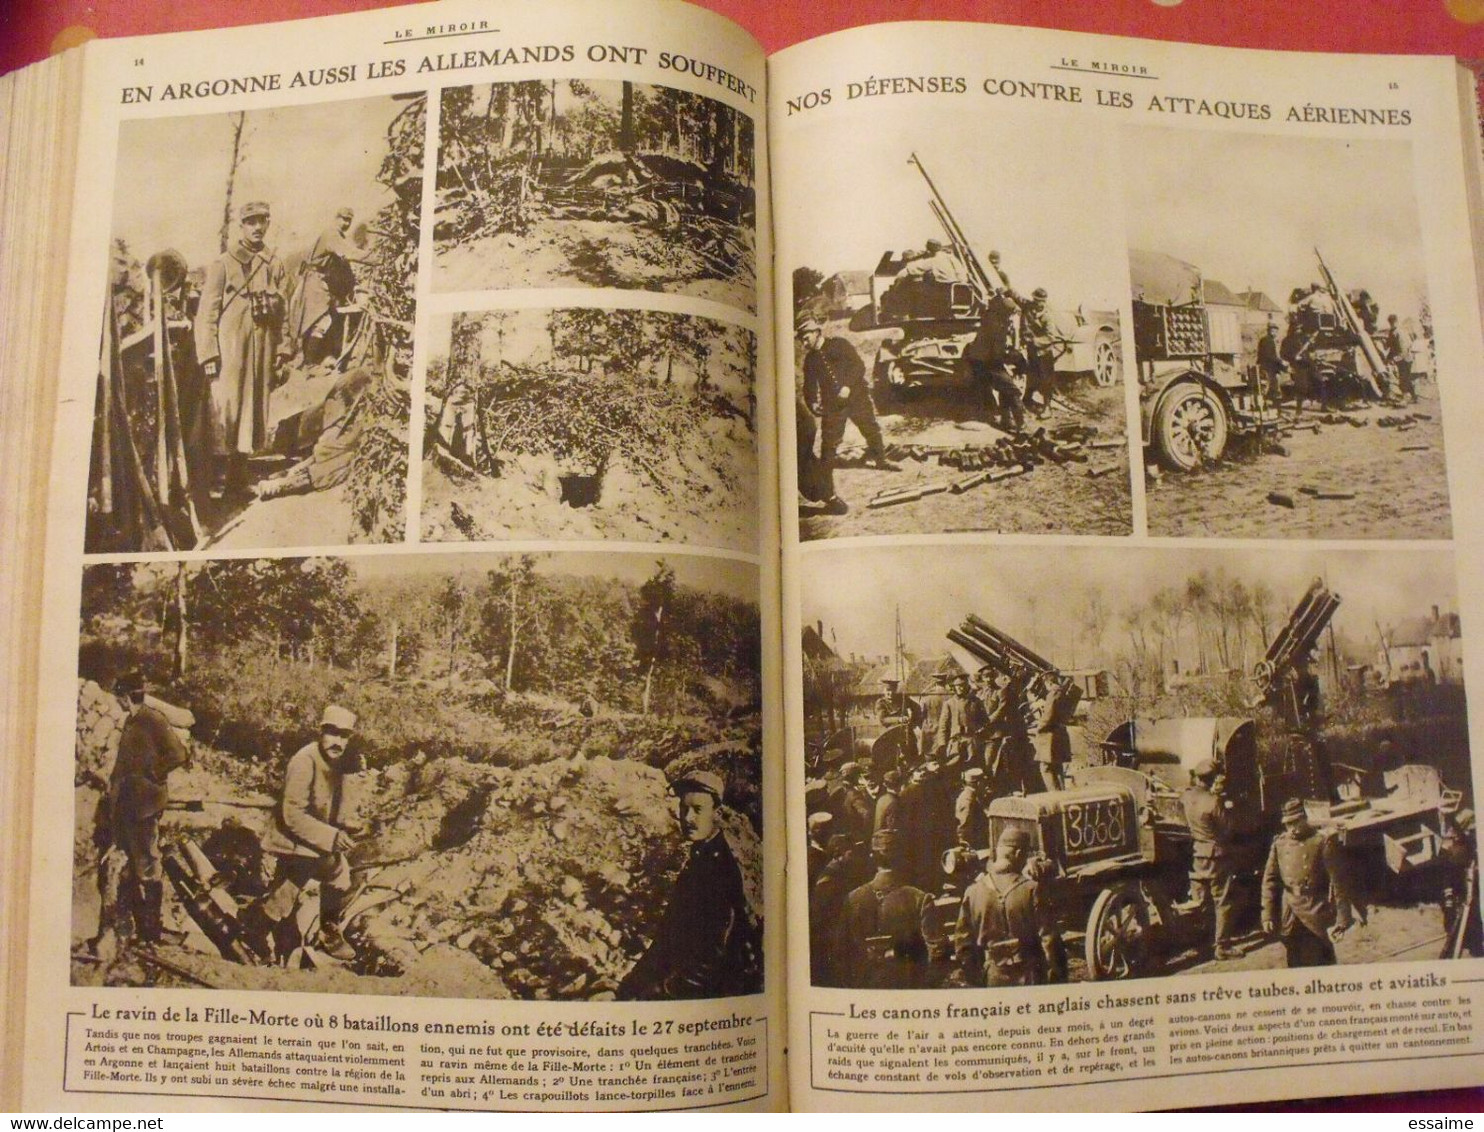 Le miroir recueil reliure 1915 (année complète 52 n°). guerre 14-18 très illustrée, documentée. zeppelin avion soldats